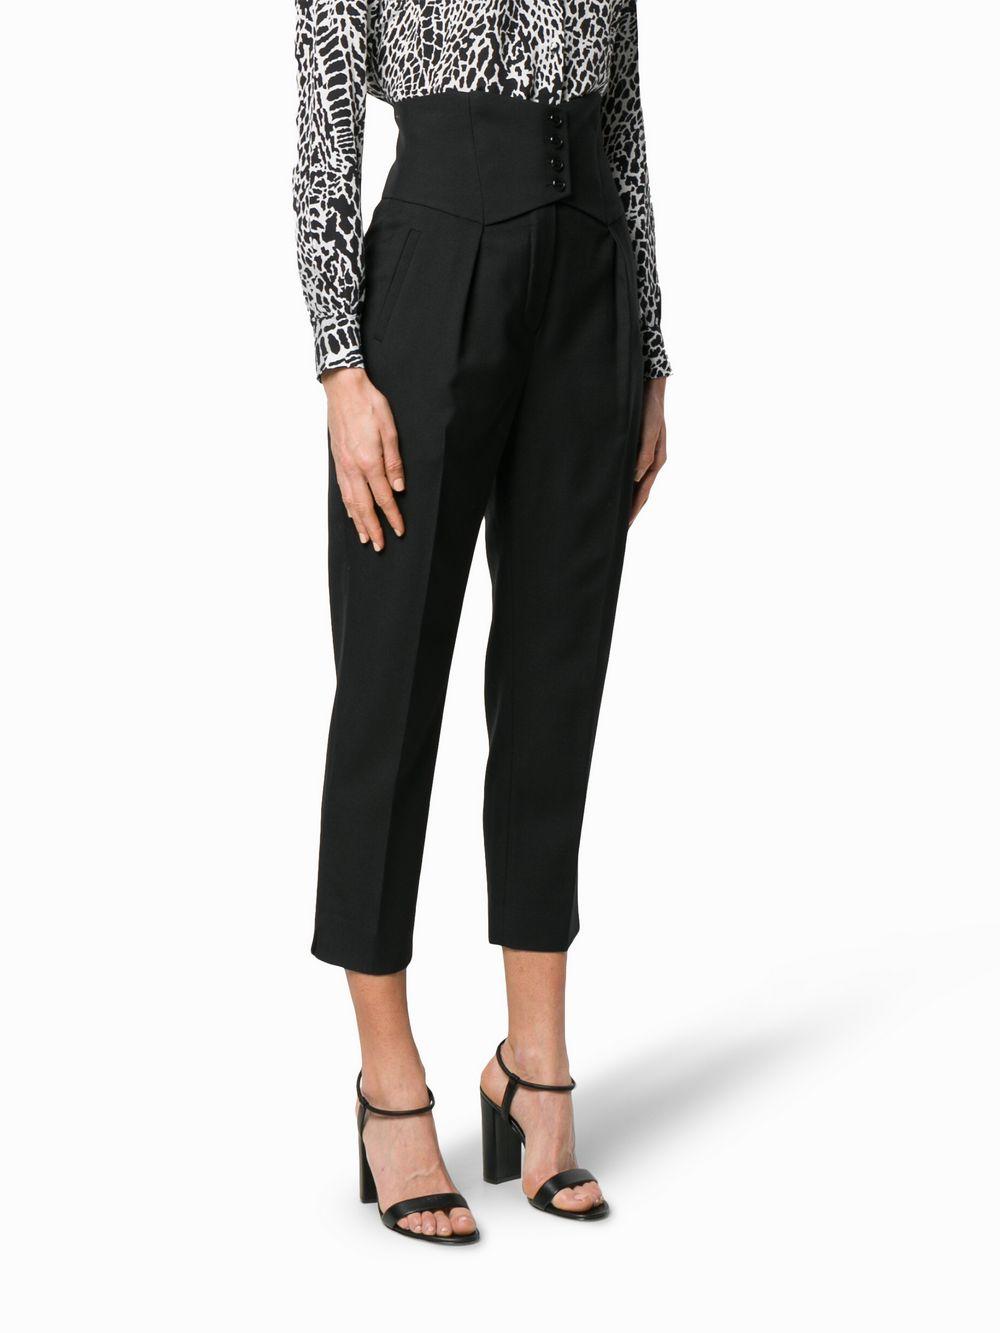 Saint Laurent Wool Corset Trousers, Plain Pattern in Black - Save 40% - Lyst